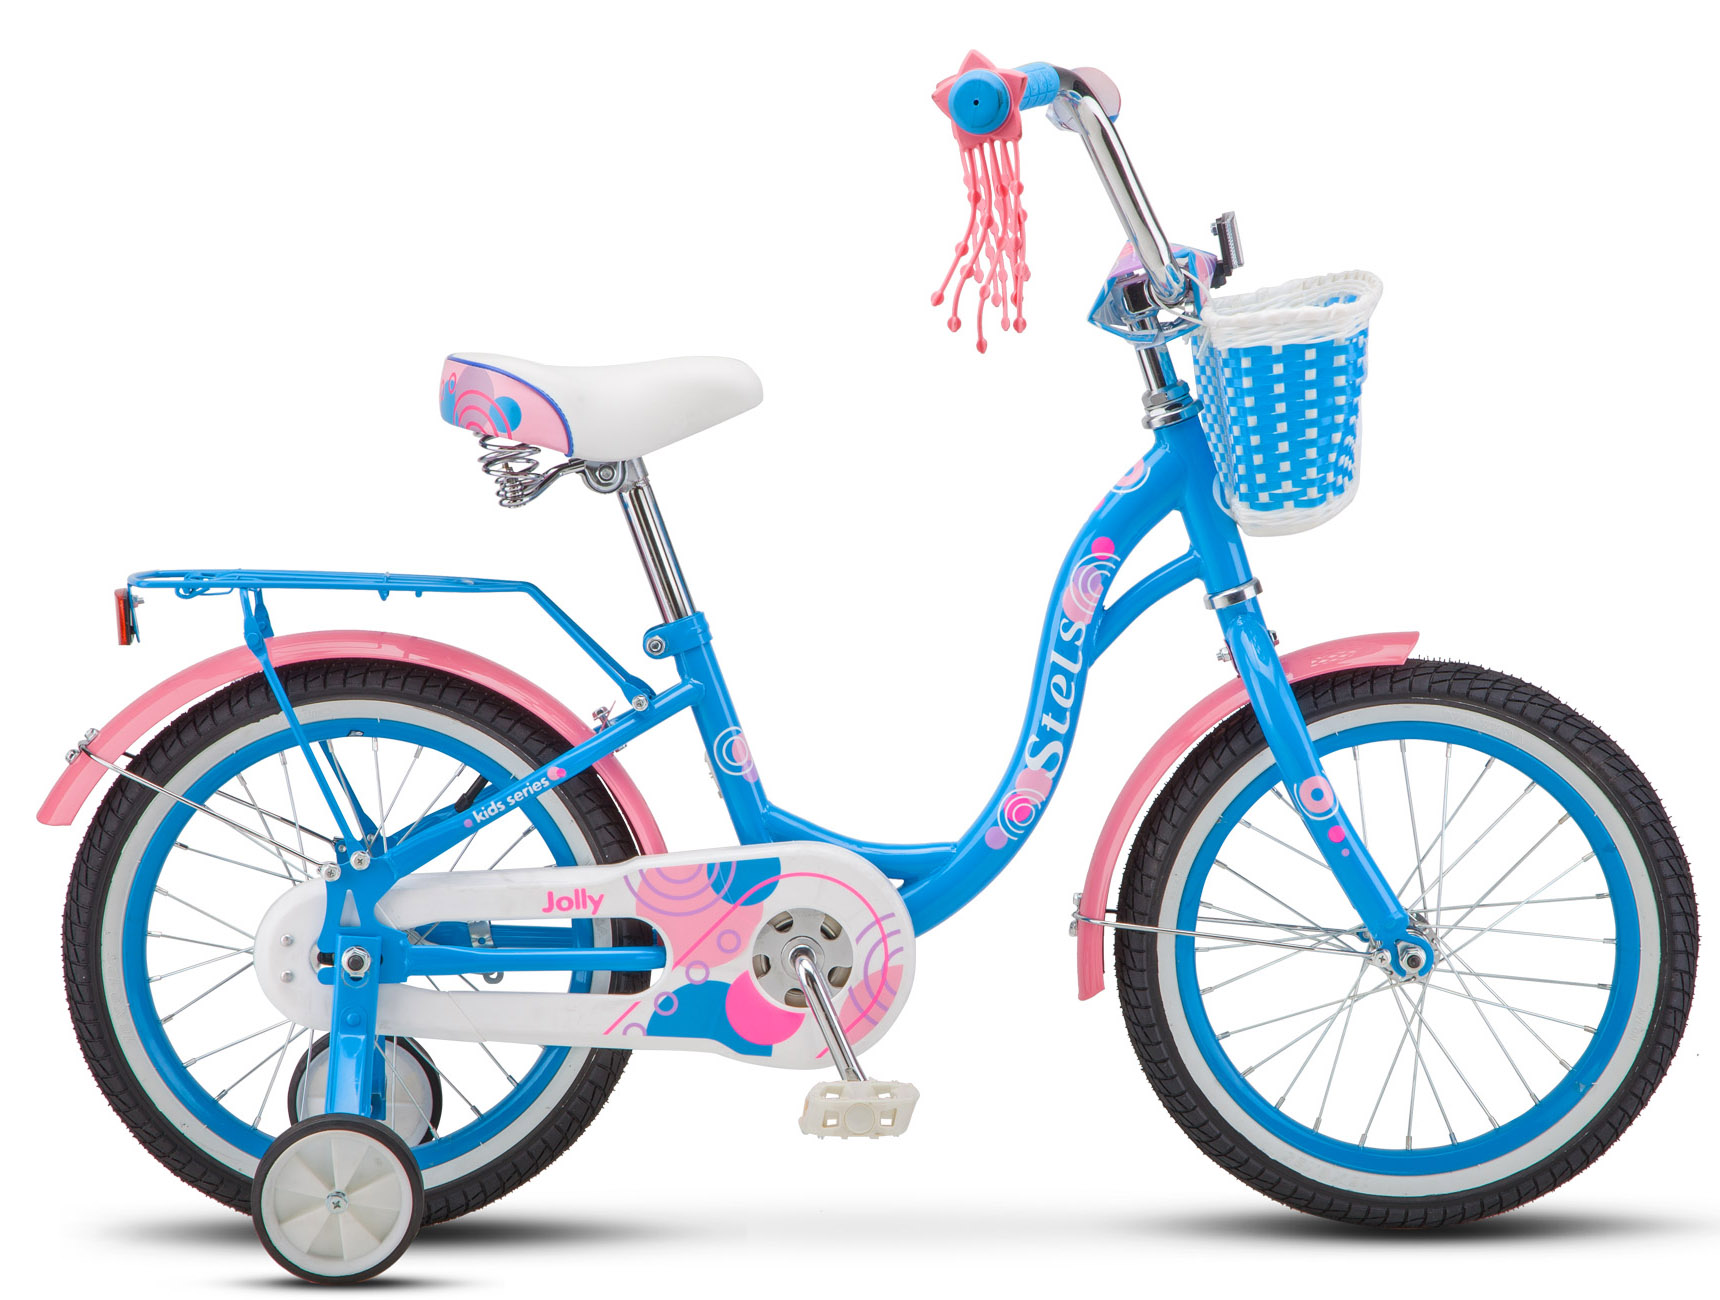  Отзывы о Детском велосипеде Stels Jolly 16 V010 2020